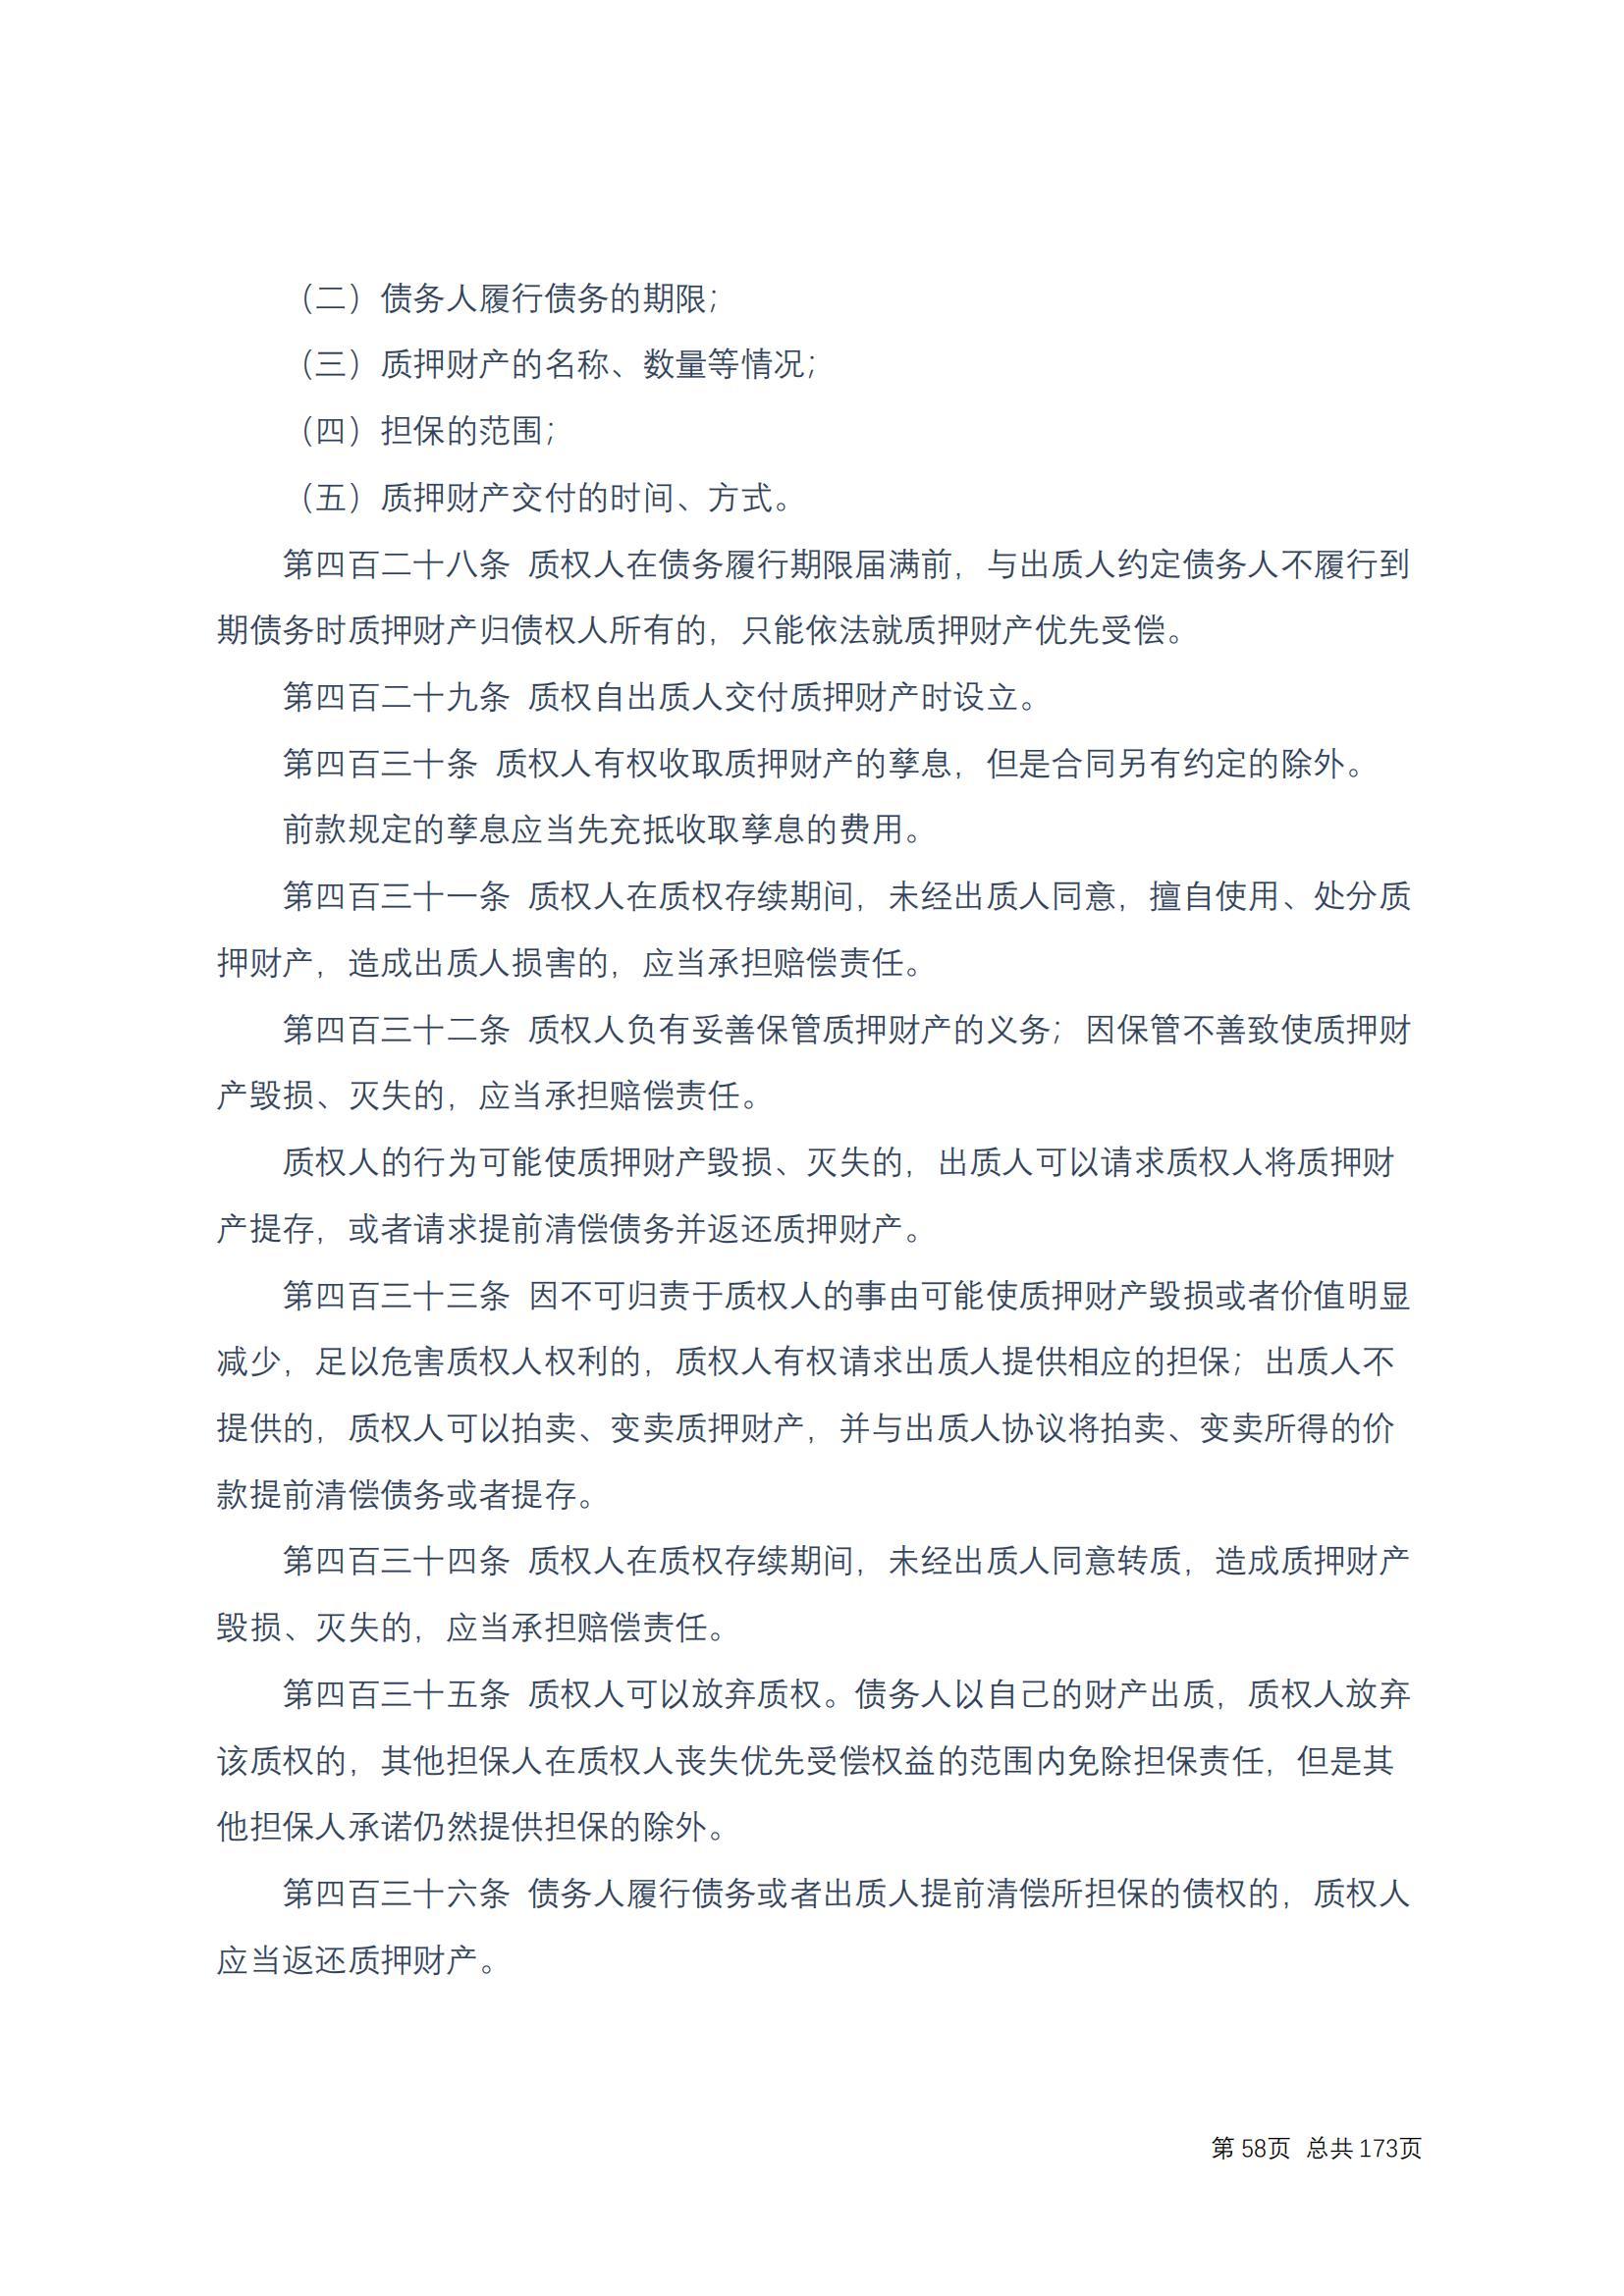 中华人民共和国民法典 修改过_57